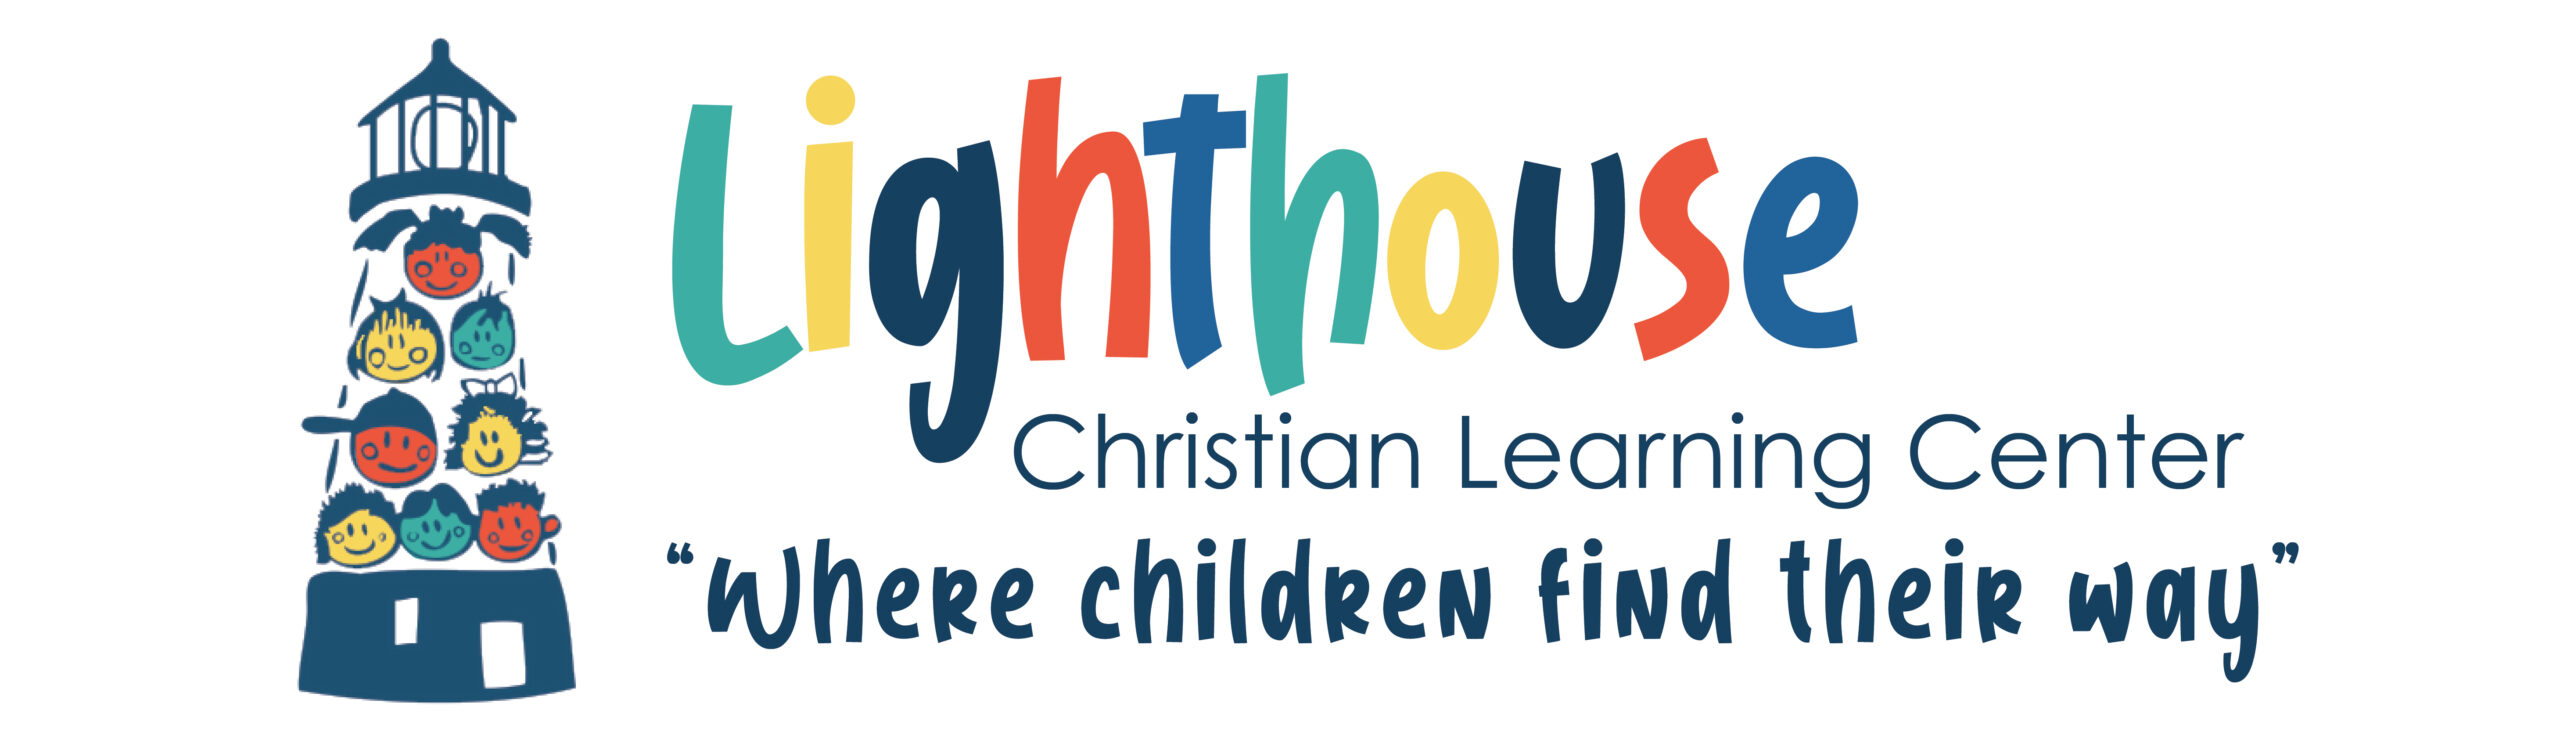 Lighthouse Christian Learning Center